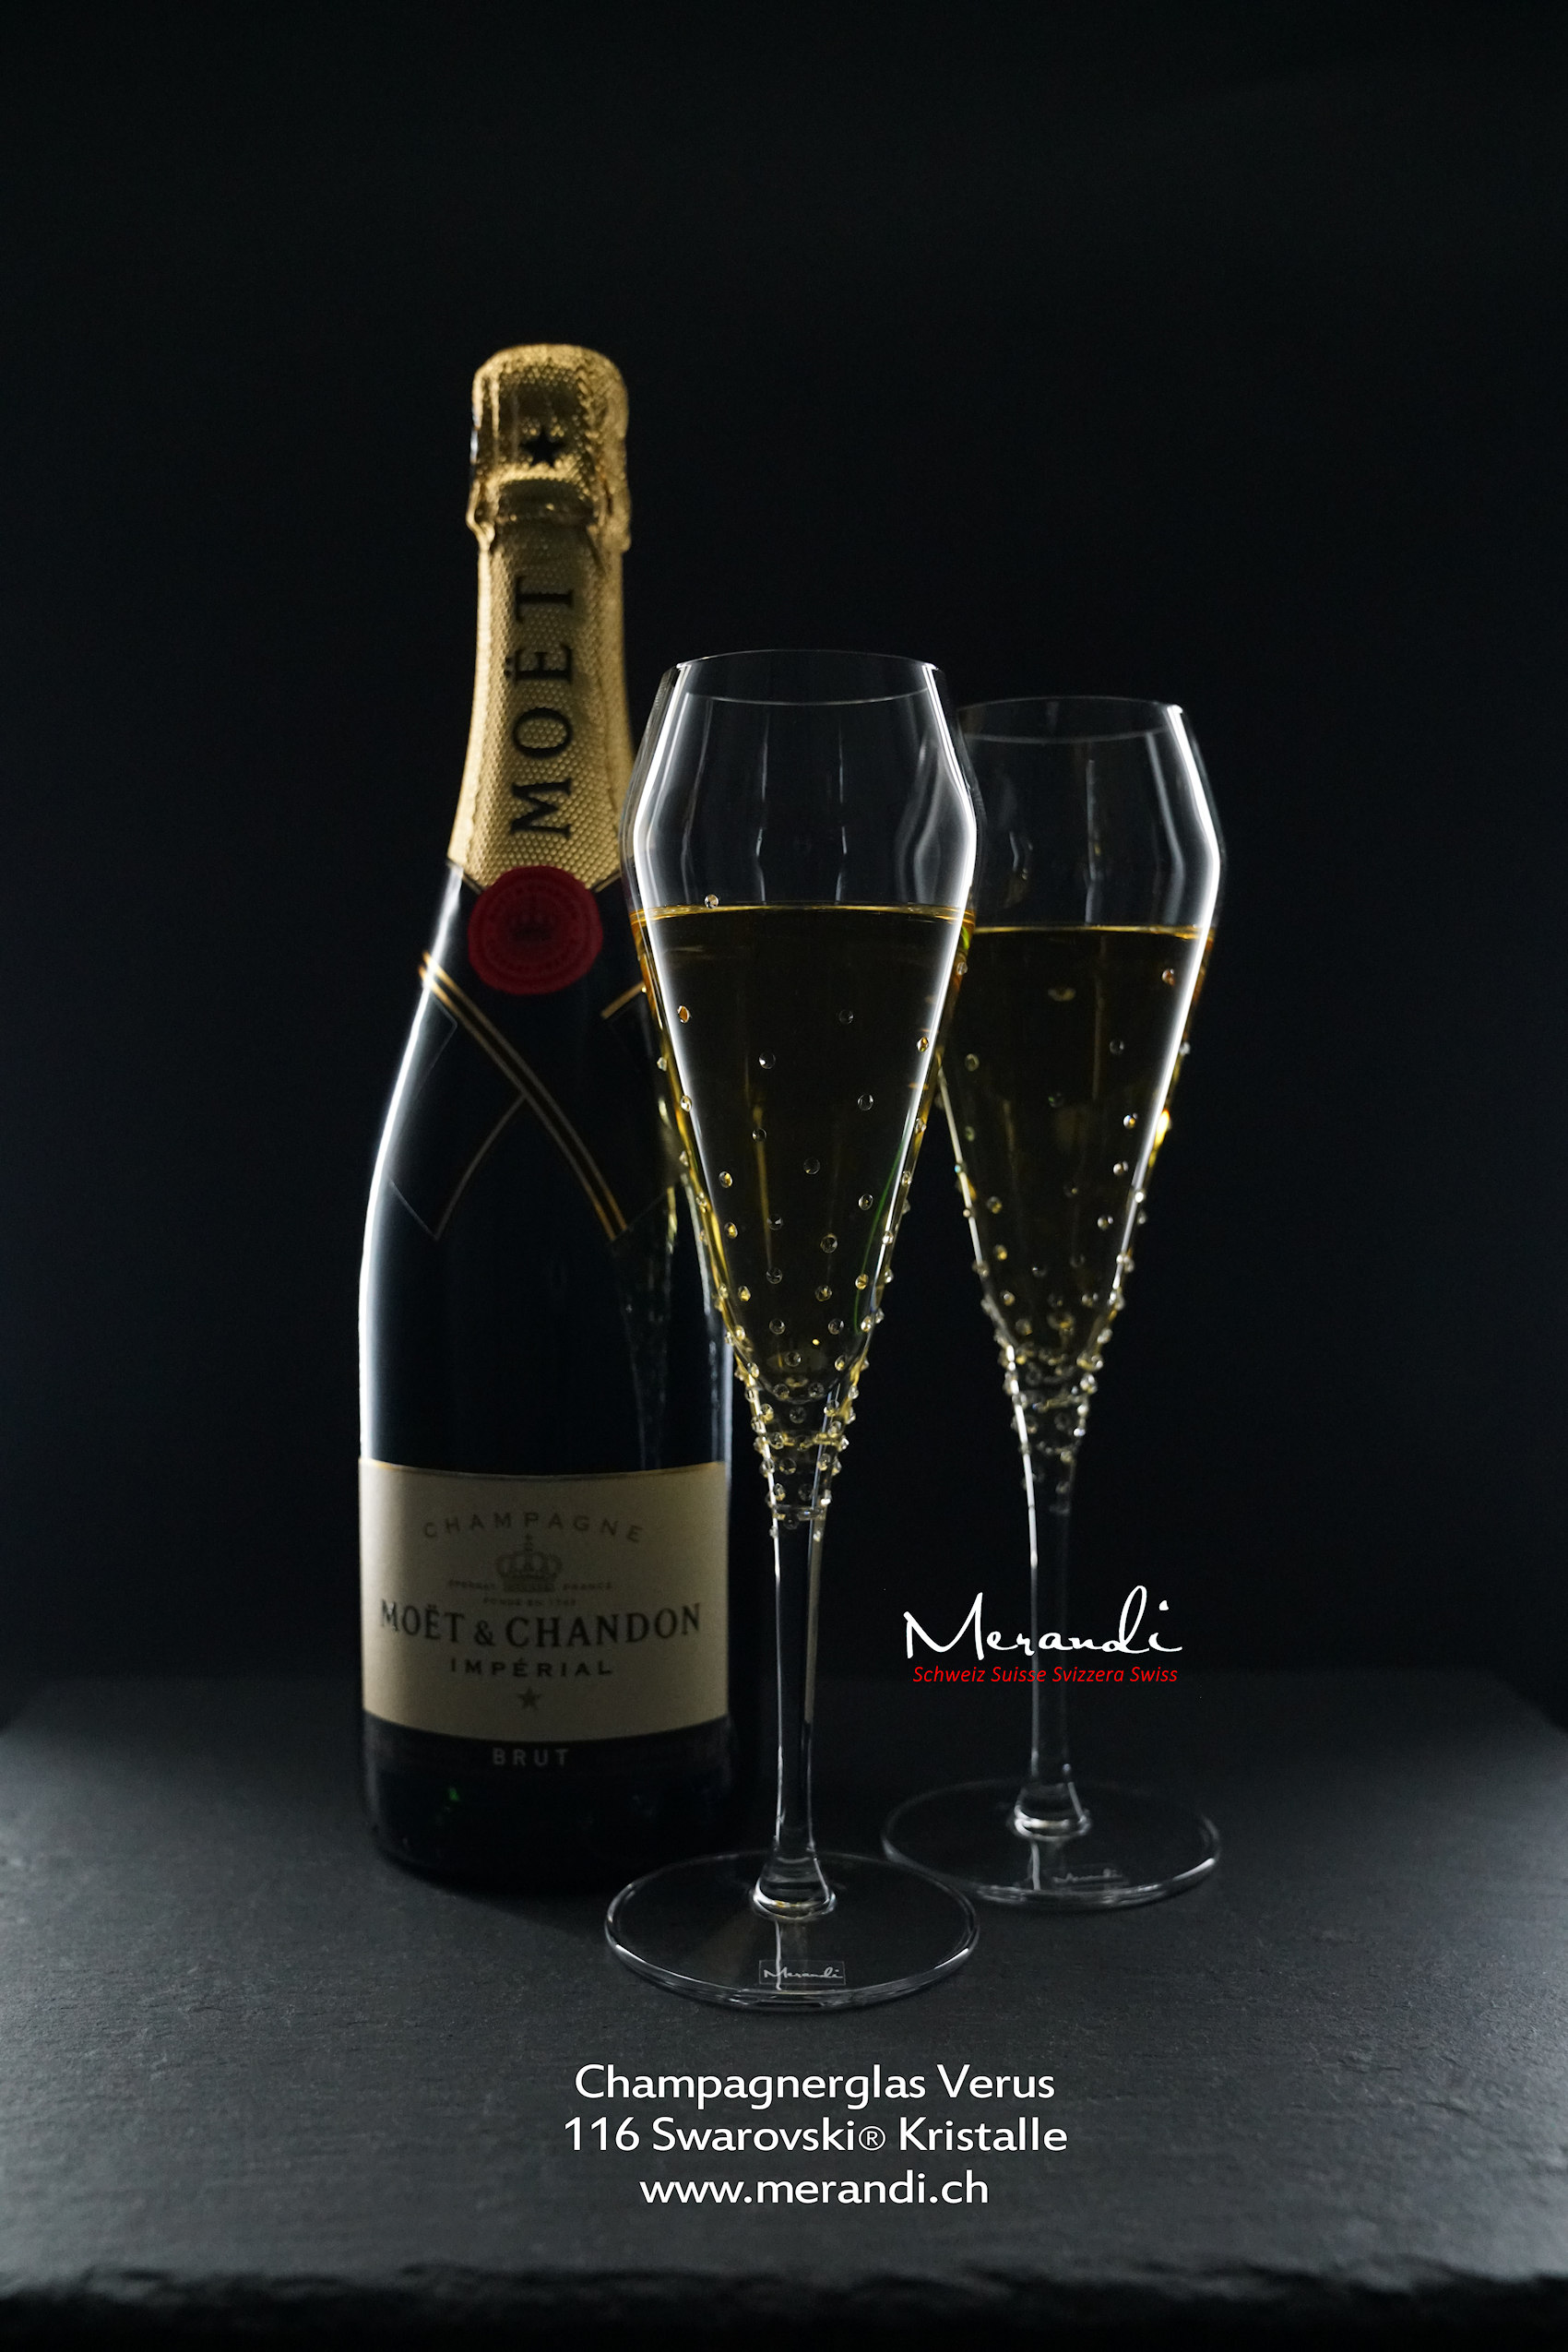 Champagnerglas Verus, Merandi Schweiz, 116 Swarovski® Kristalle, Moet Chandon